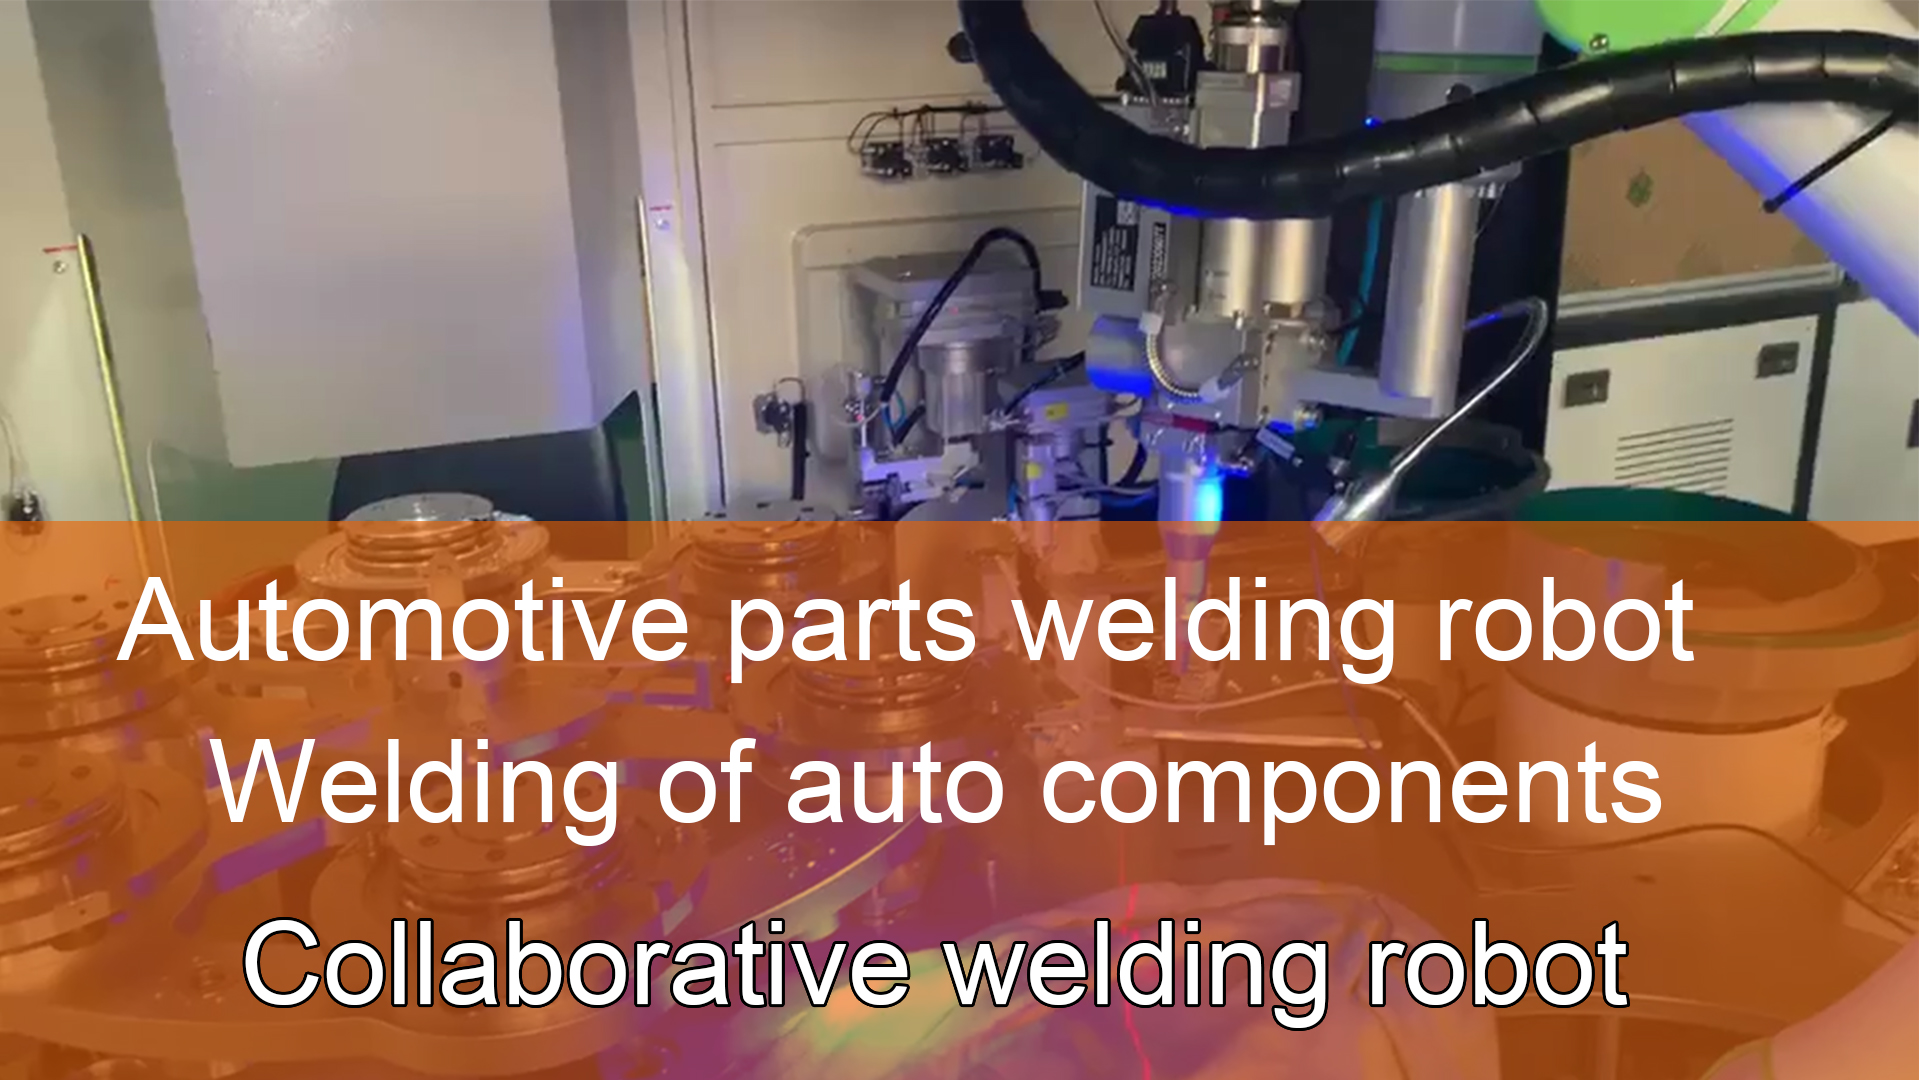 協働溶接ロボット |自動車部品の溶接 |自動車部品溶接ロボット